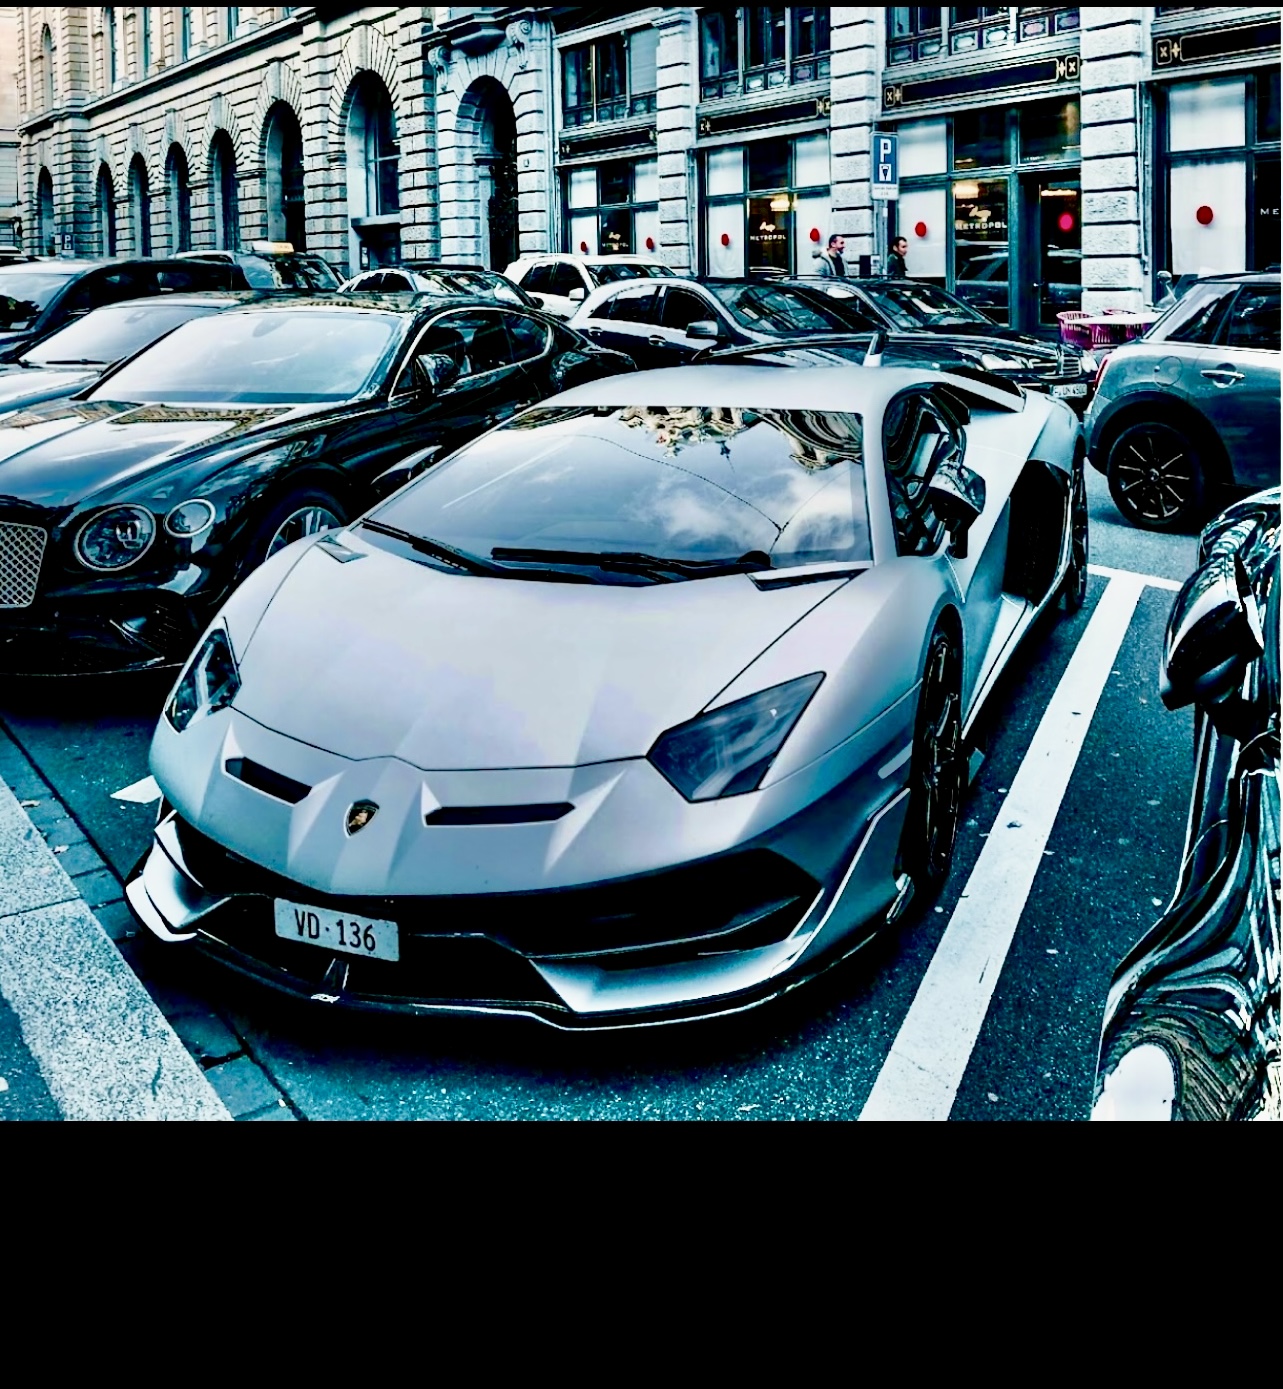 Deux voitures de luxe, une Lamborghini et une Bentley, sont stationnées dans un parking.